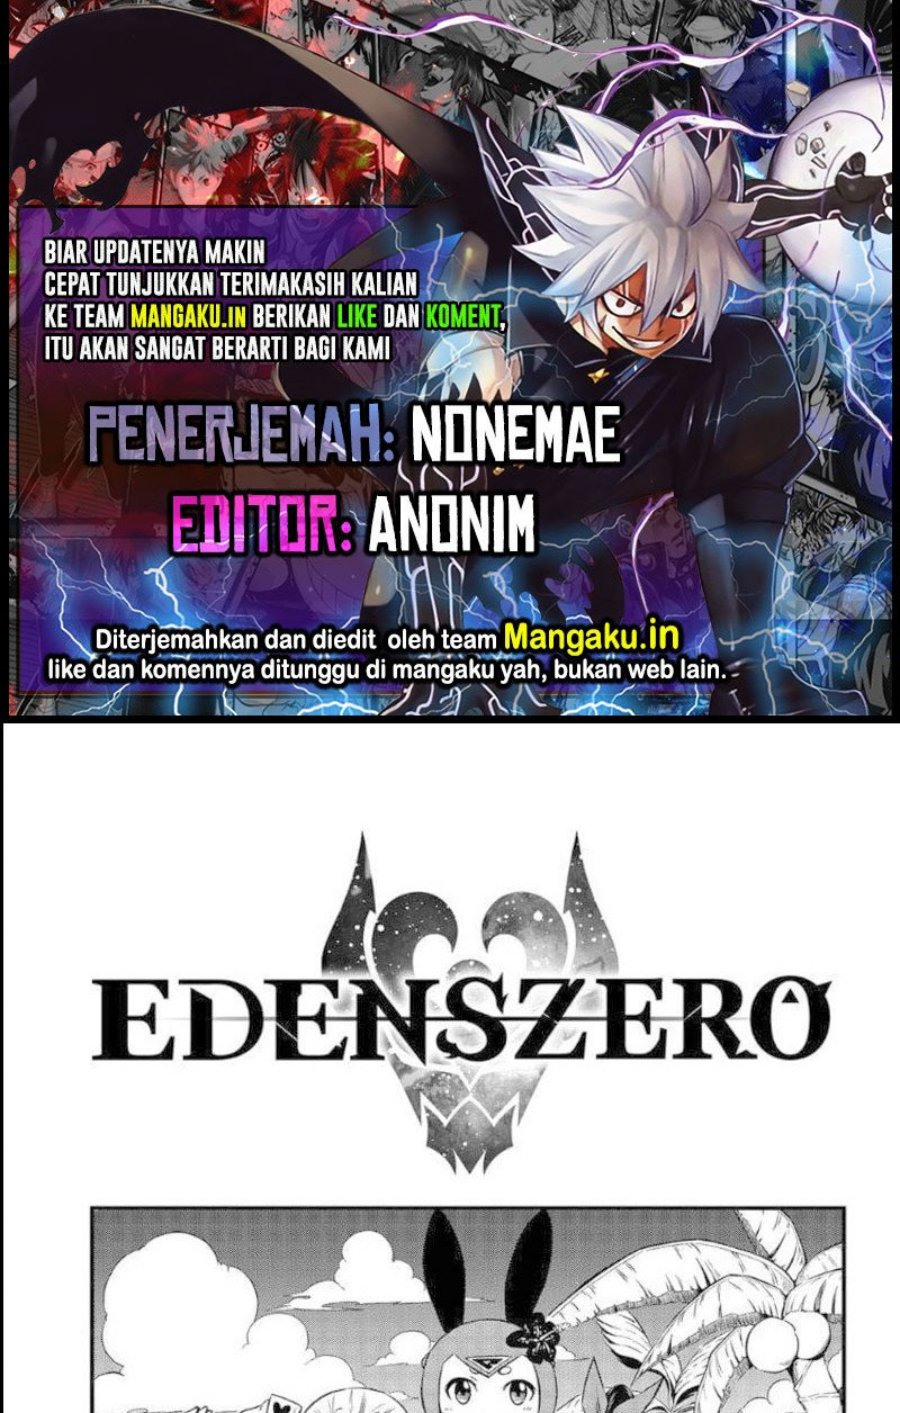 Eden’s Zero Chapter 246